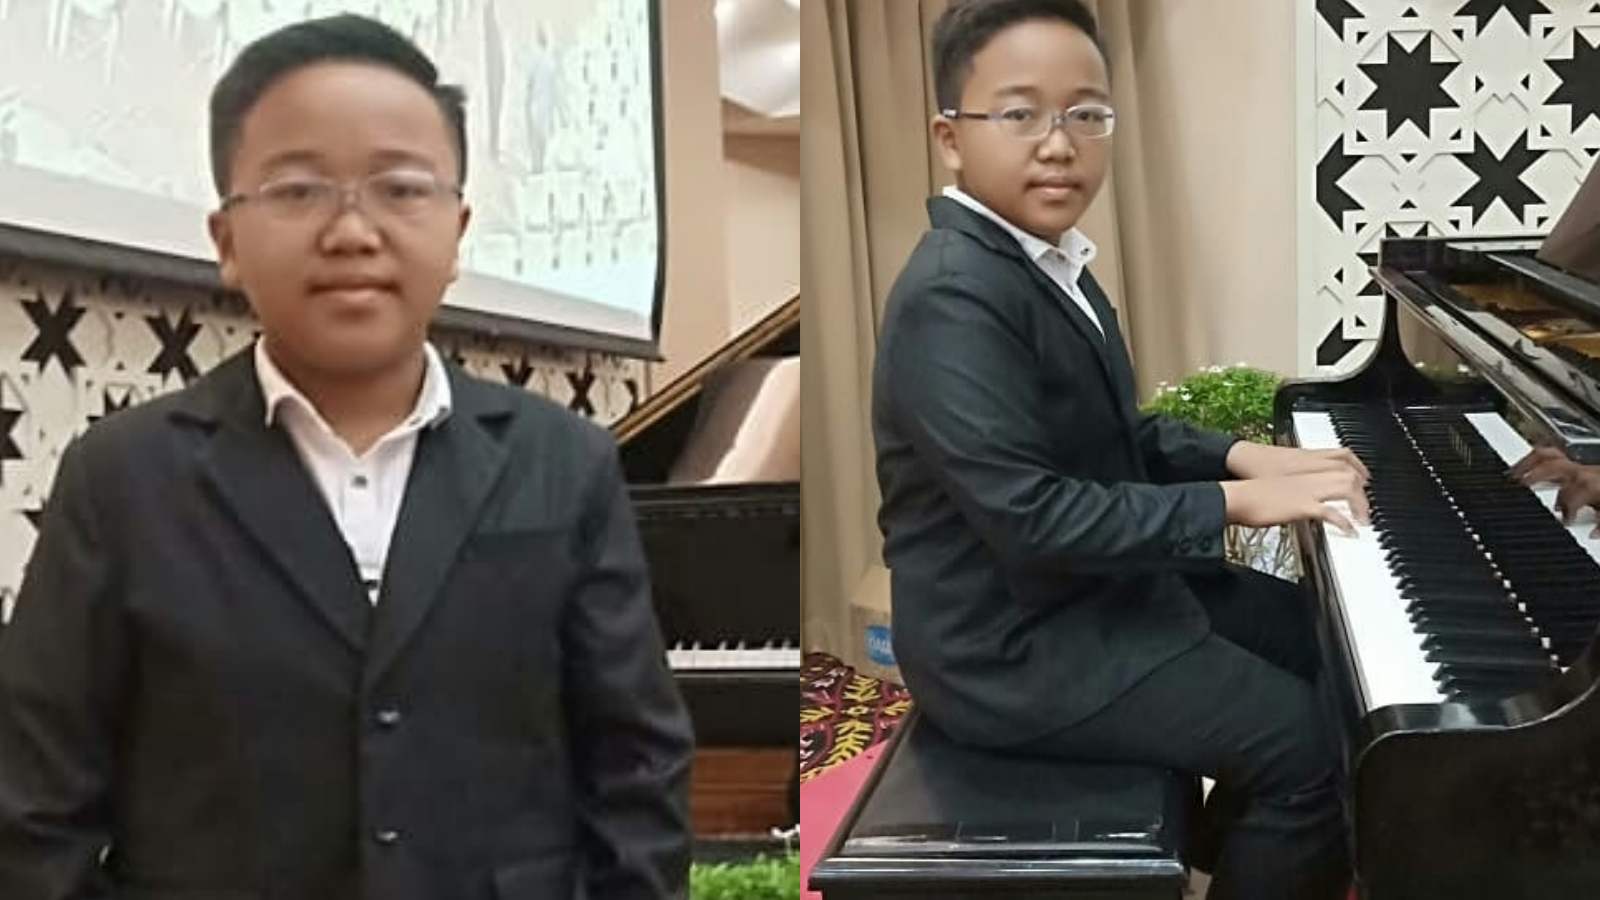 Fakta dan Profil Jefri Setiawan, Remaja asal Kendal Pecahkan Rekor Main Piano dengan Mata Tertutup Selama 4 Jam